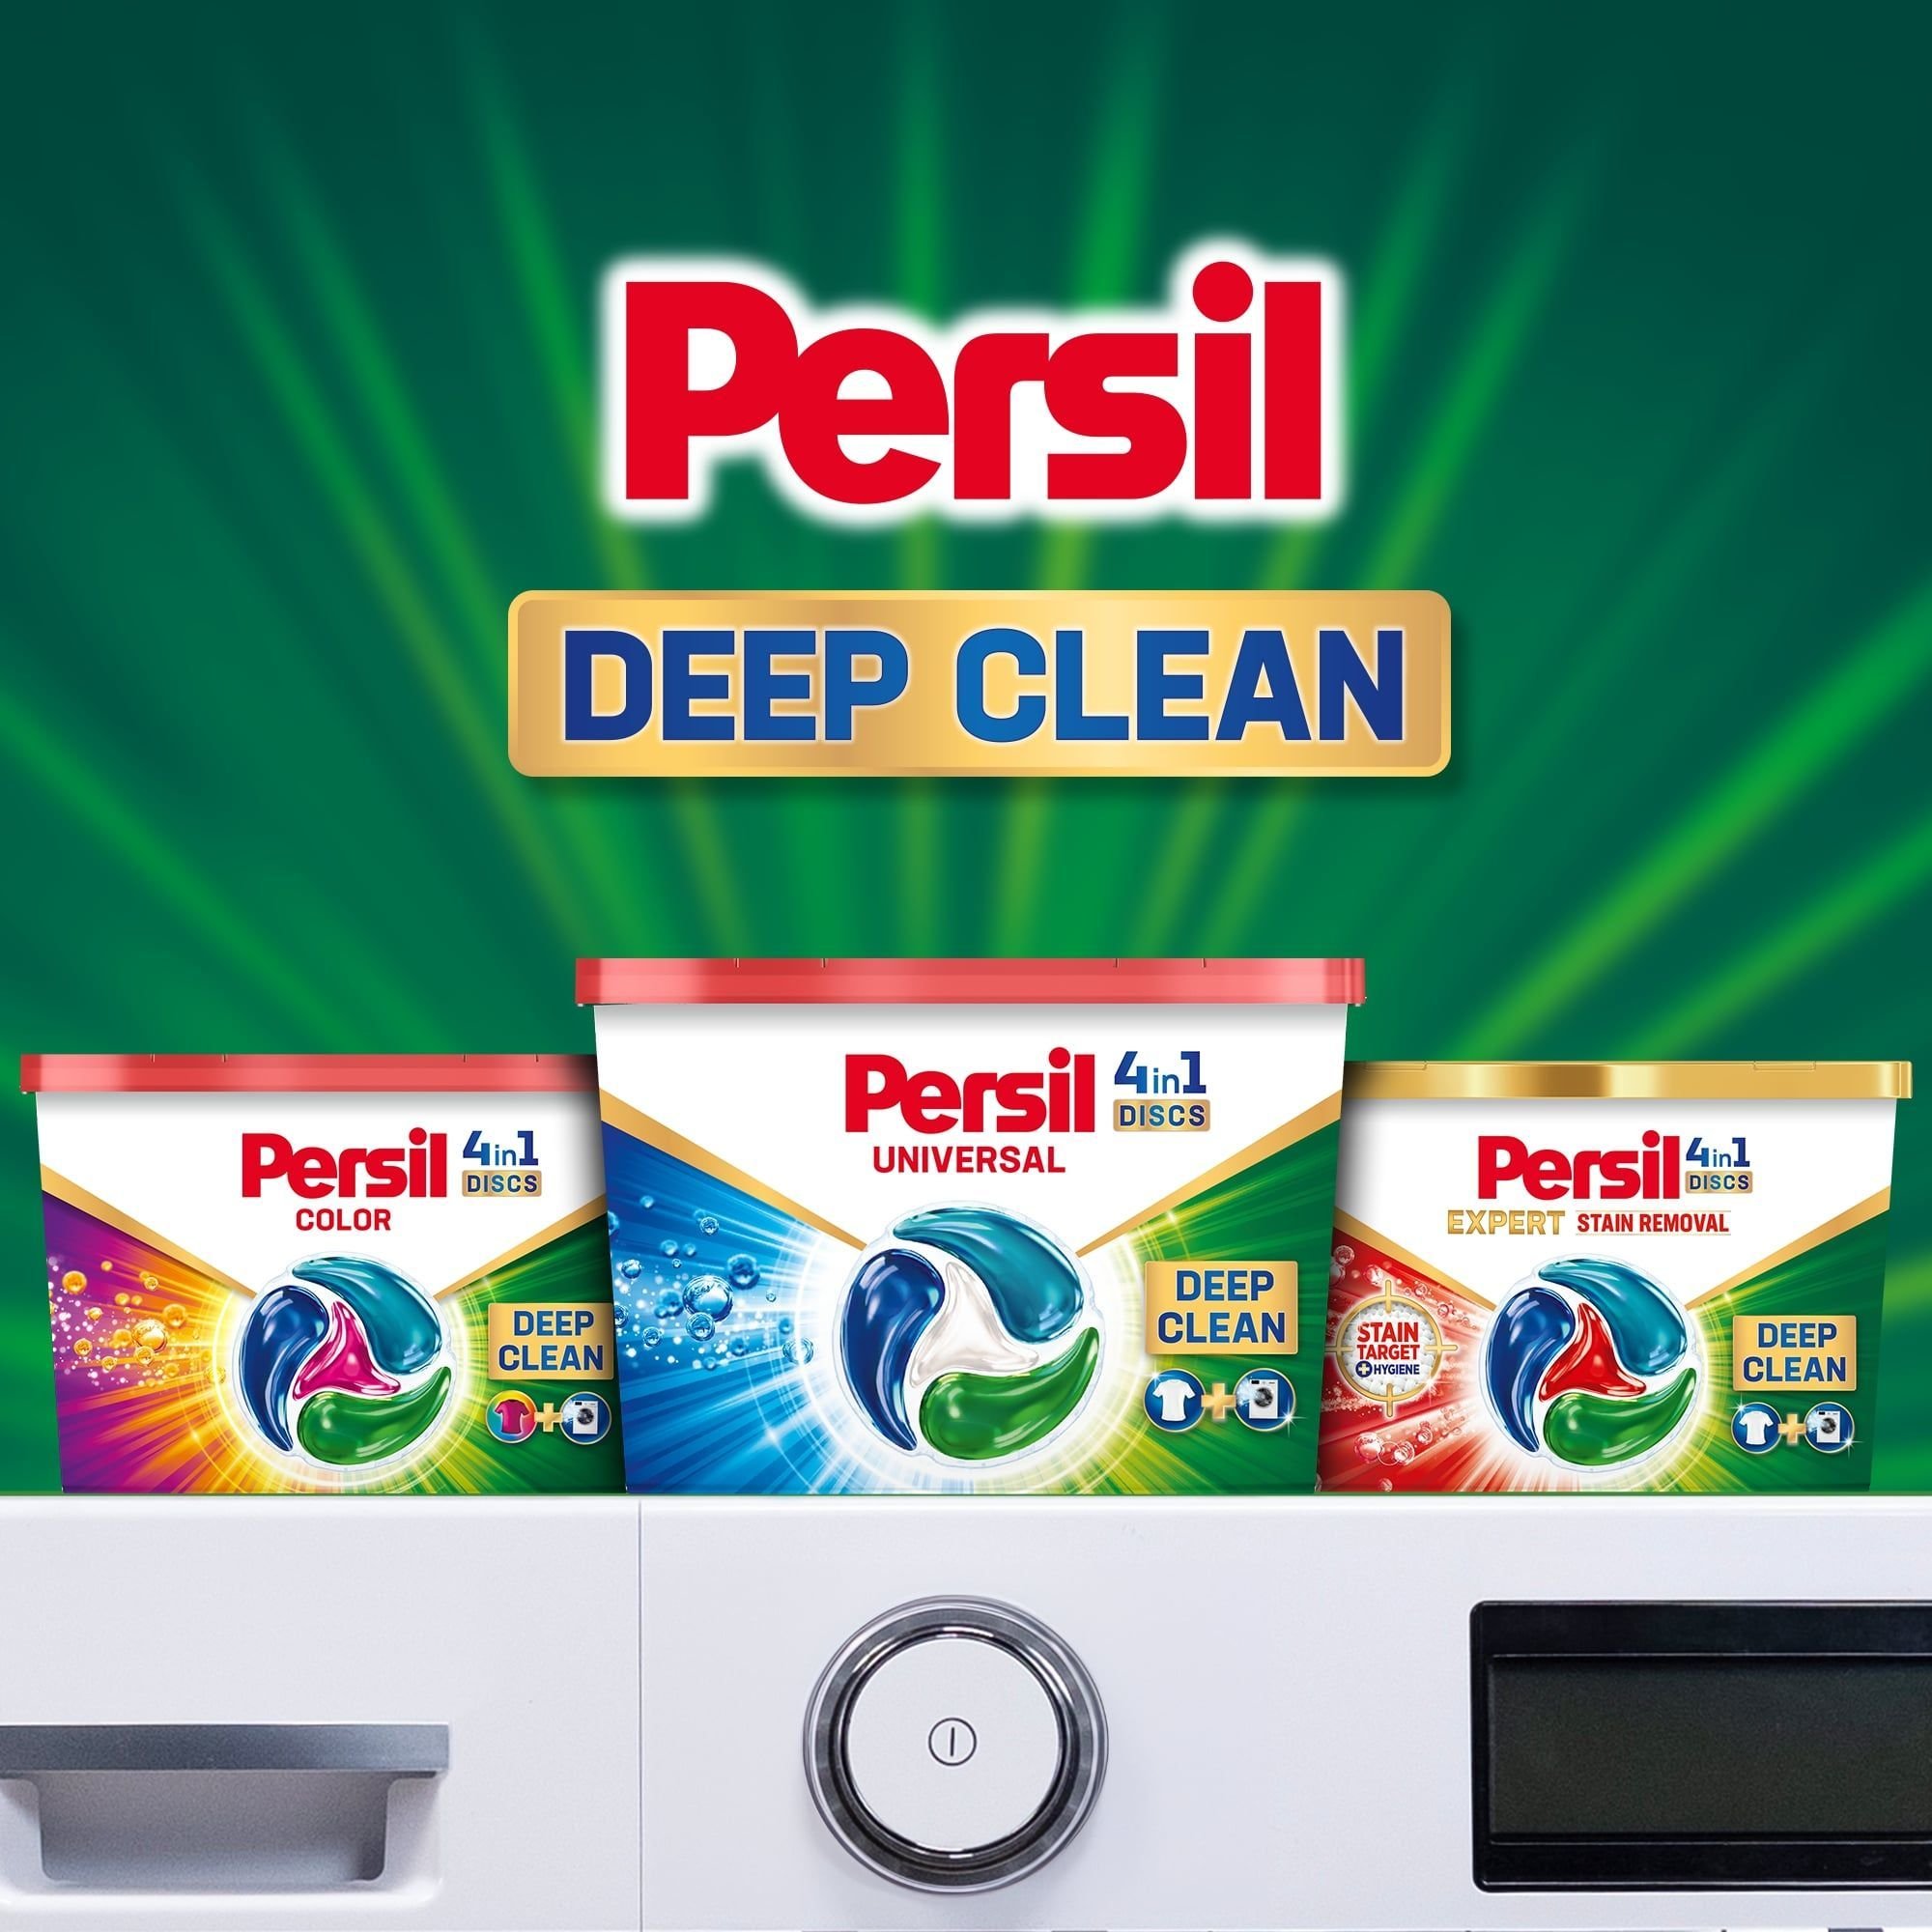 Диски для прання Persil Deep Cleen Universal 4 in 1 Discs 40 шт. - фото 6